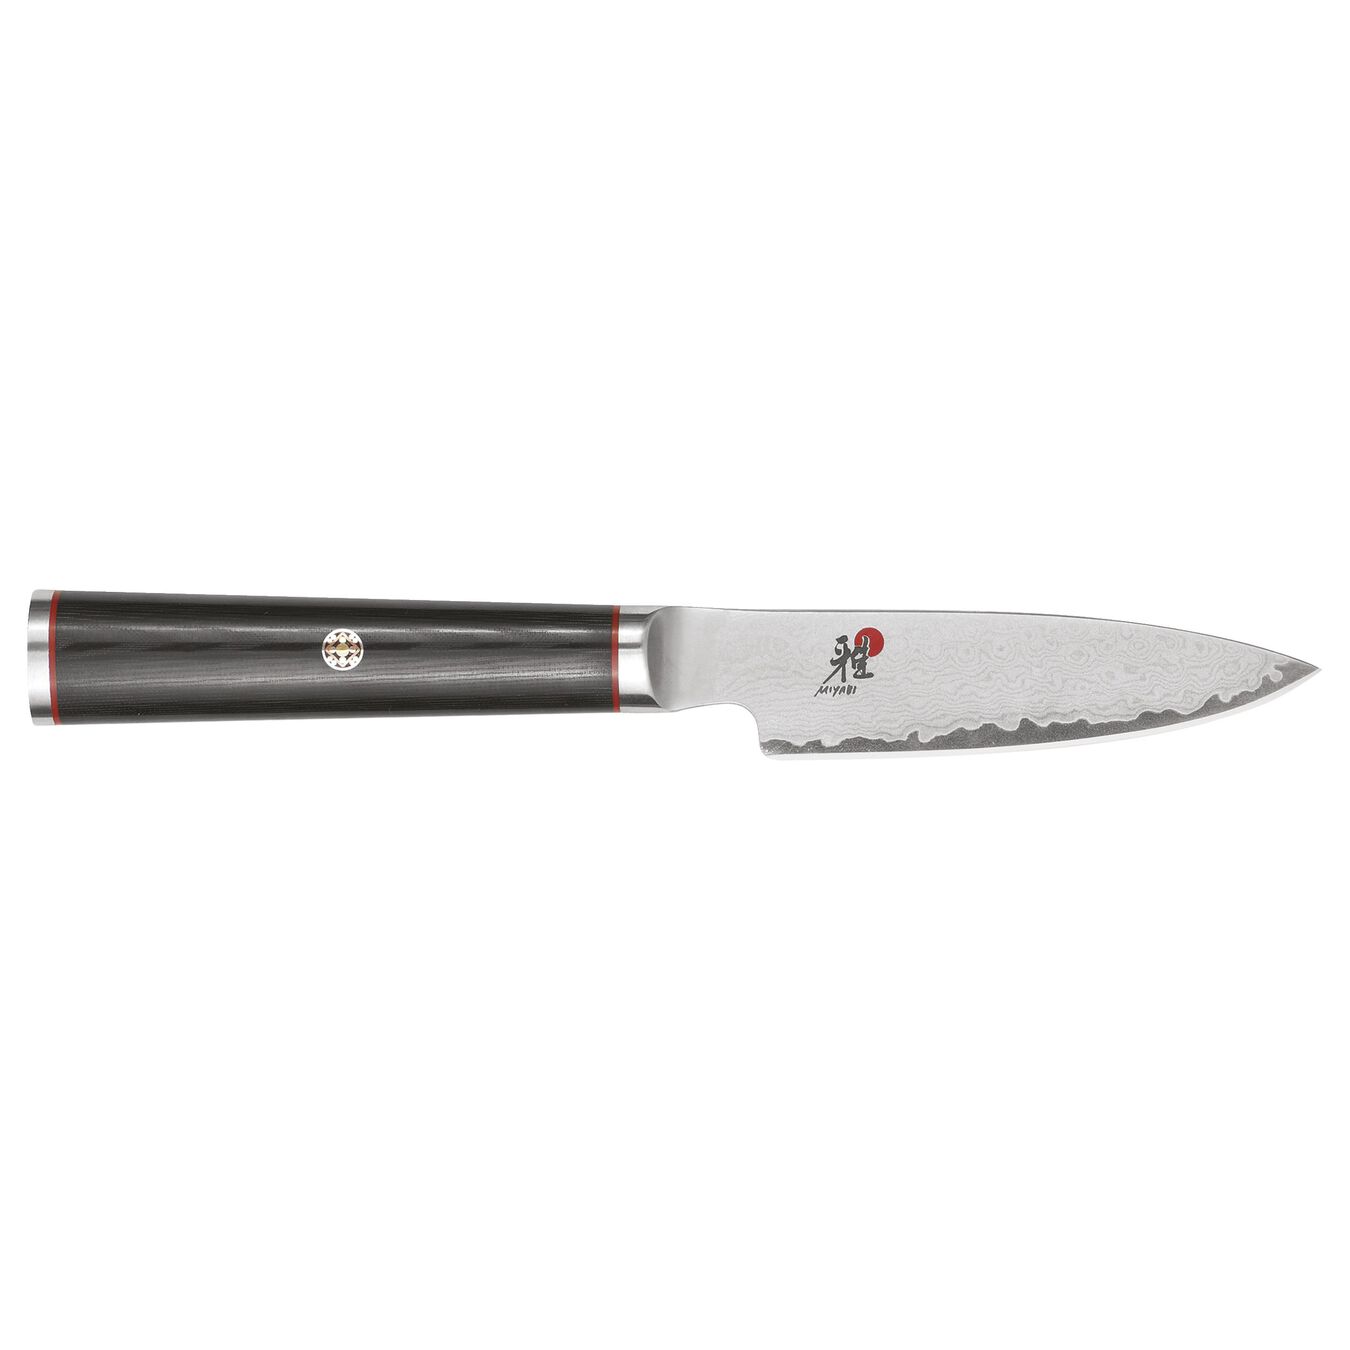 3.5-inch micarta Paring Knife,,large 2